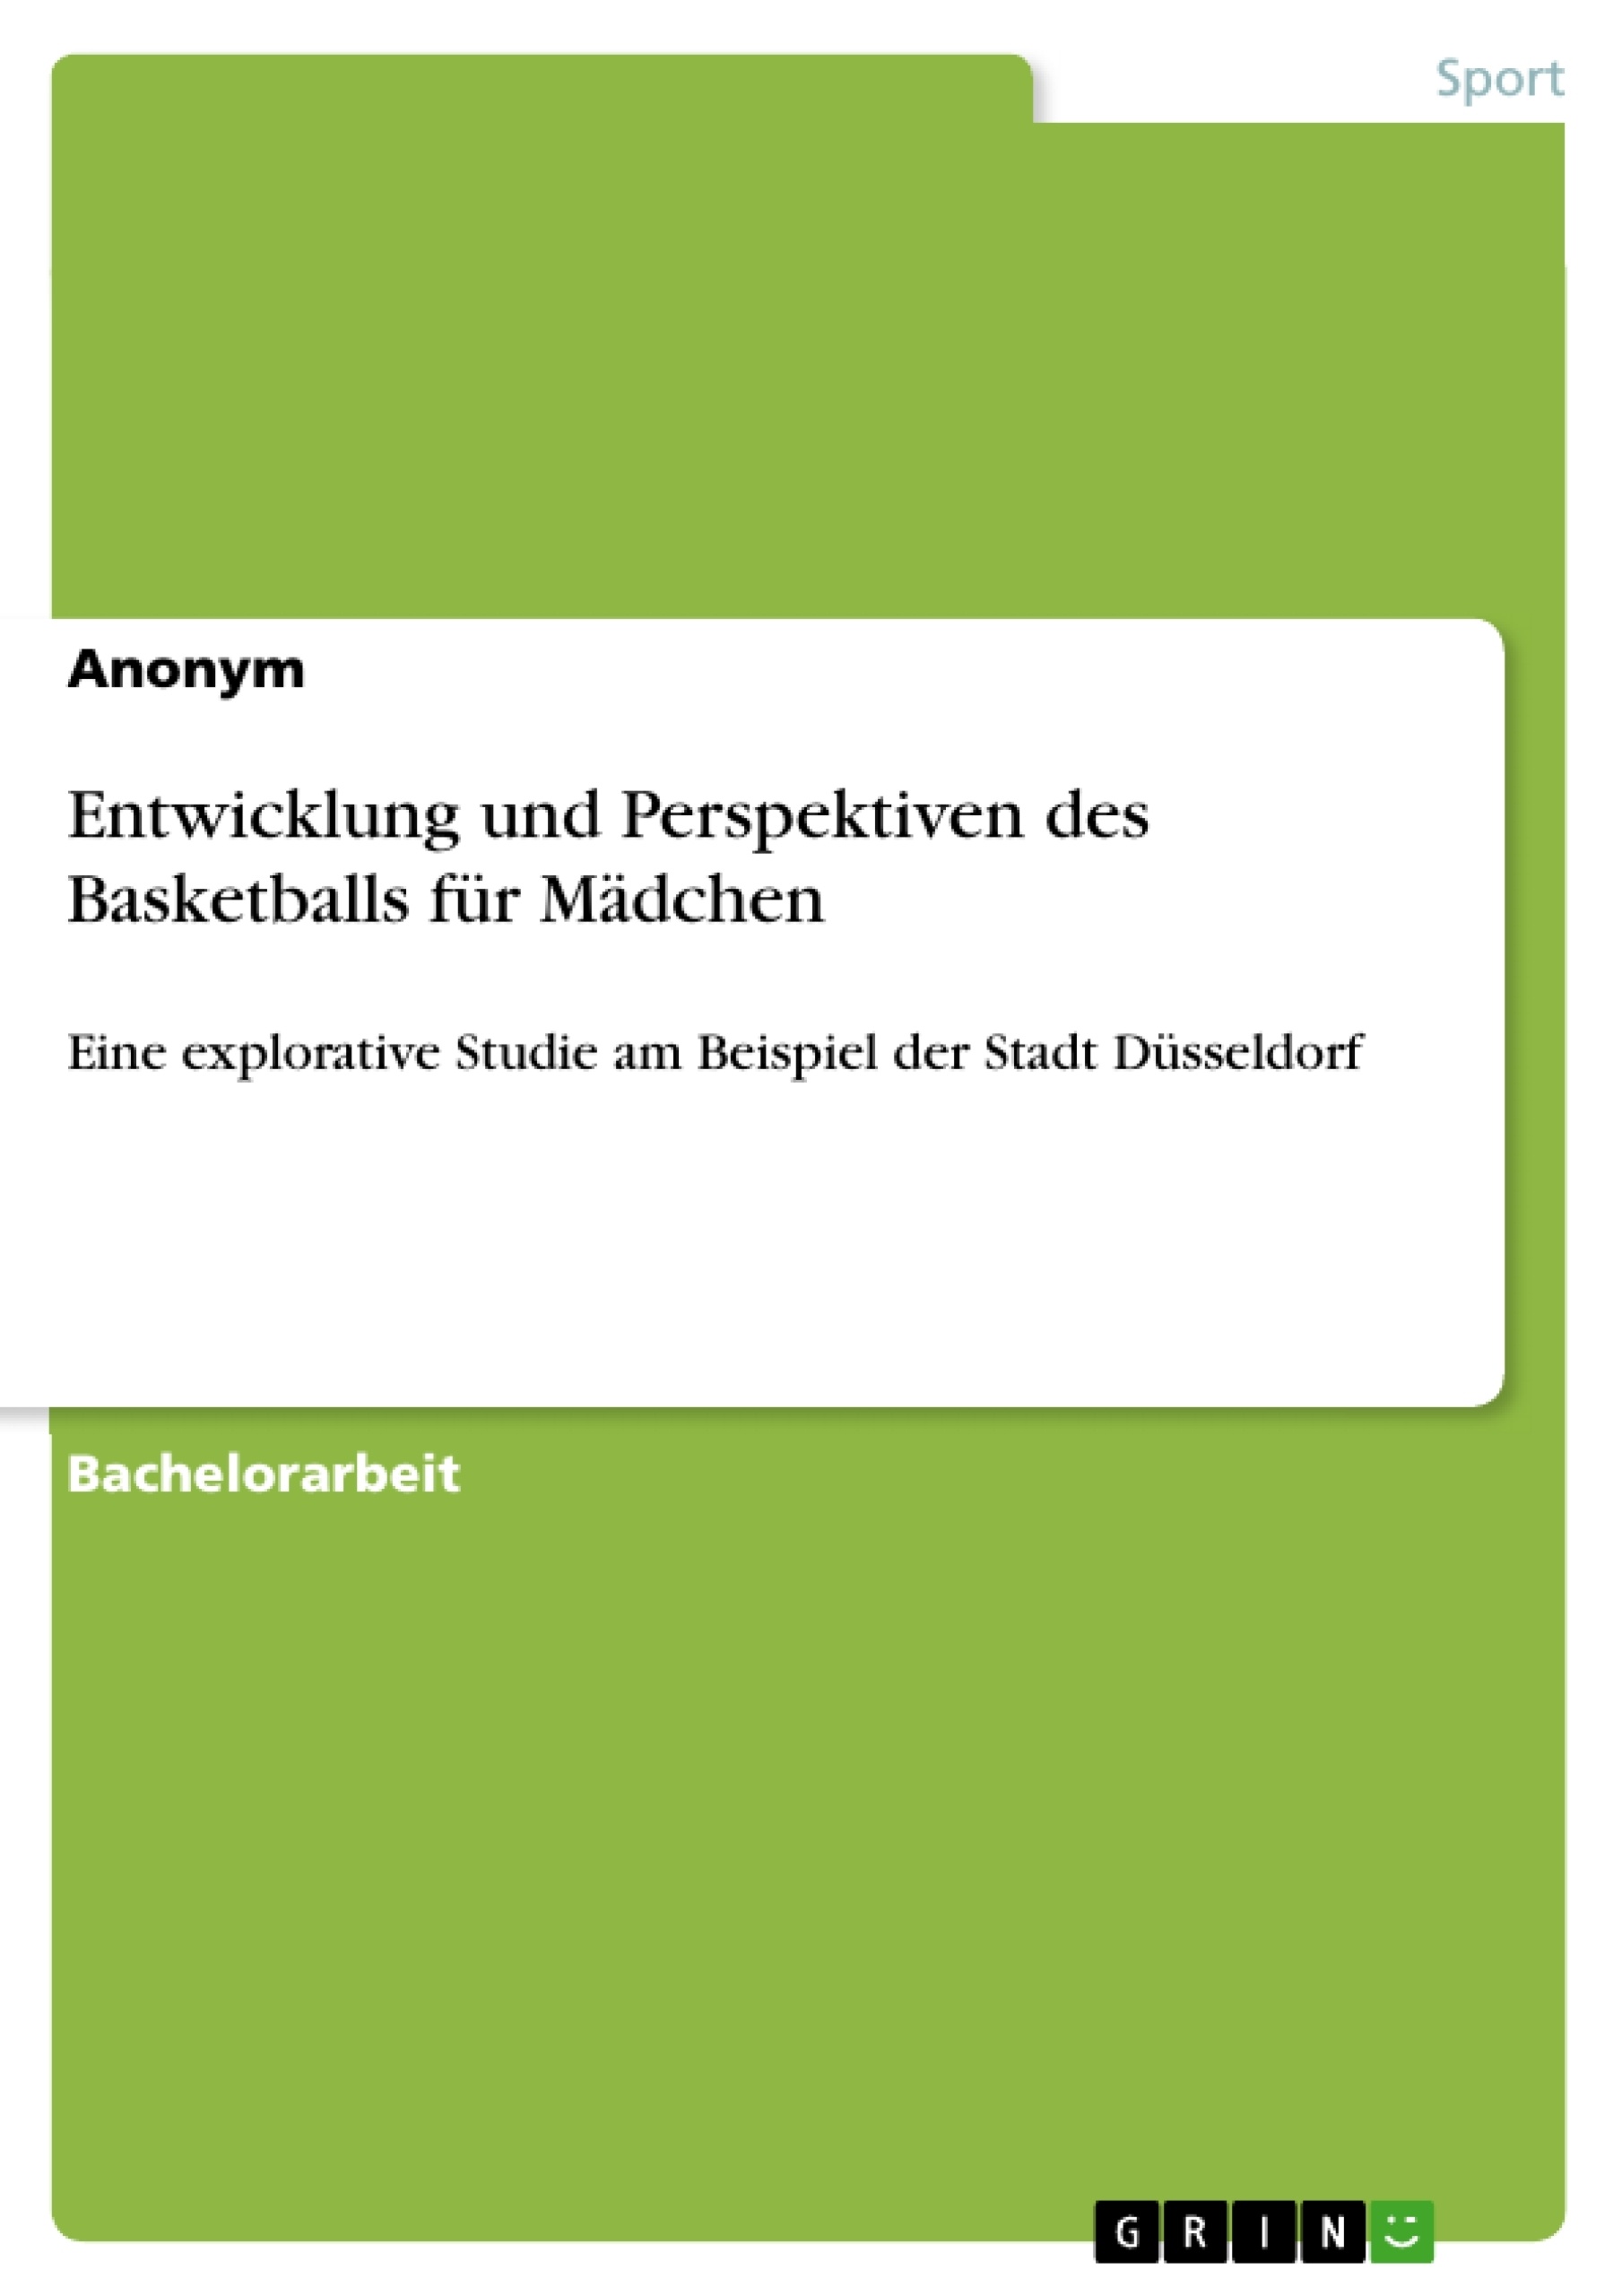 Title: Entwicklung und Perspektiven des Basketballs für Mädchen